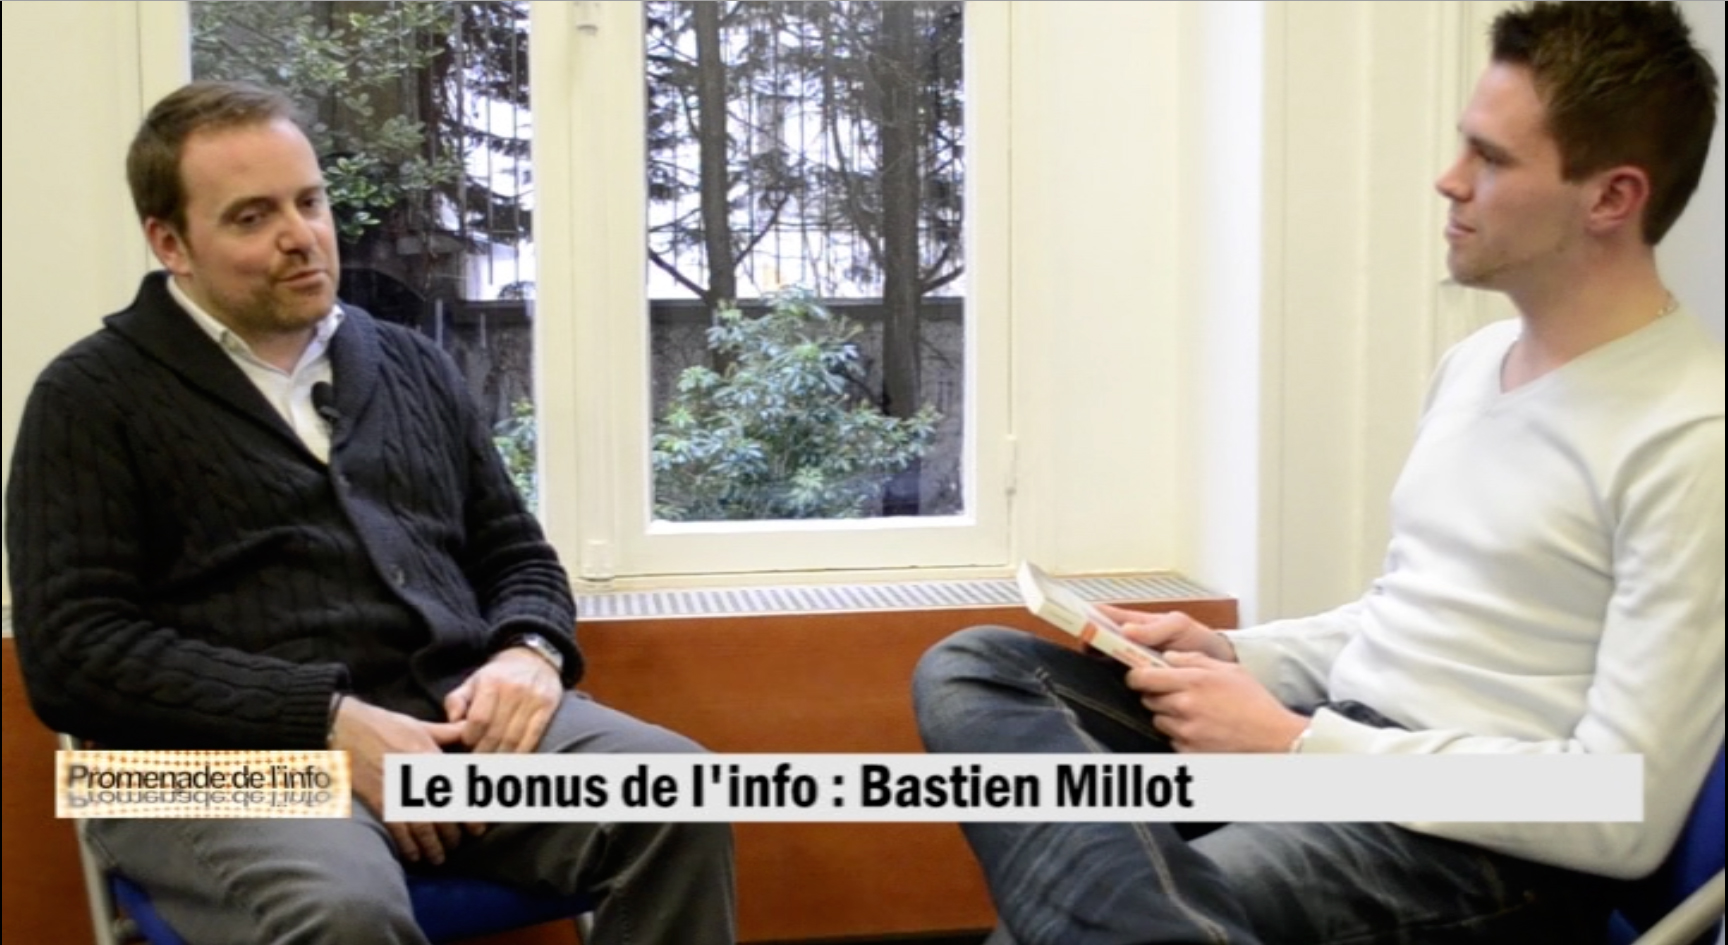 Bastien Millot